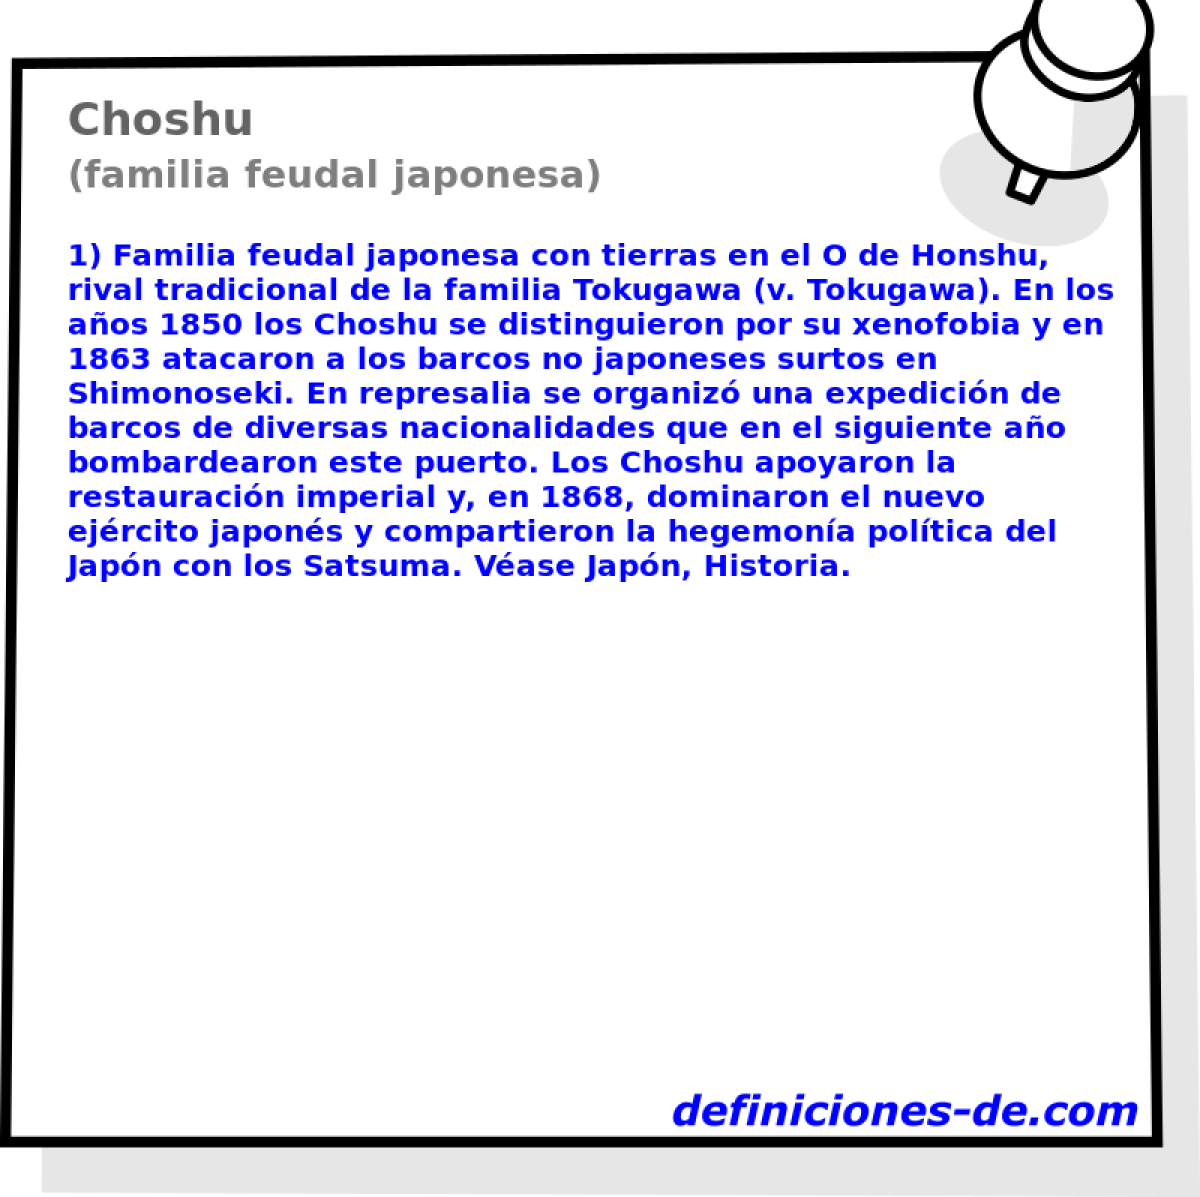 Choshu (familia feudal japonesa)